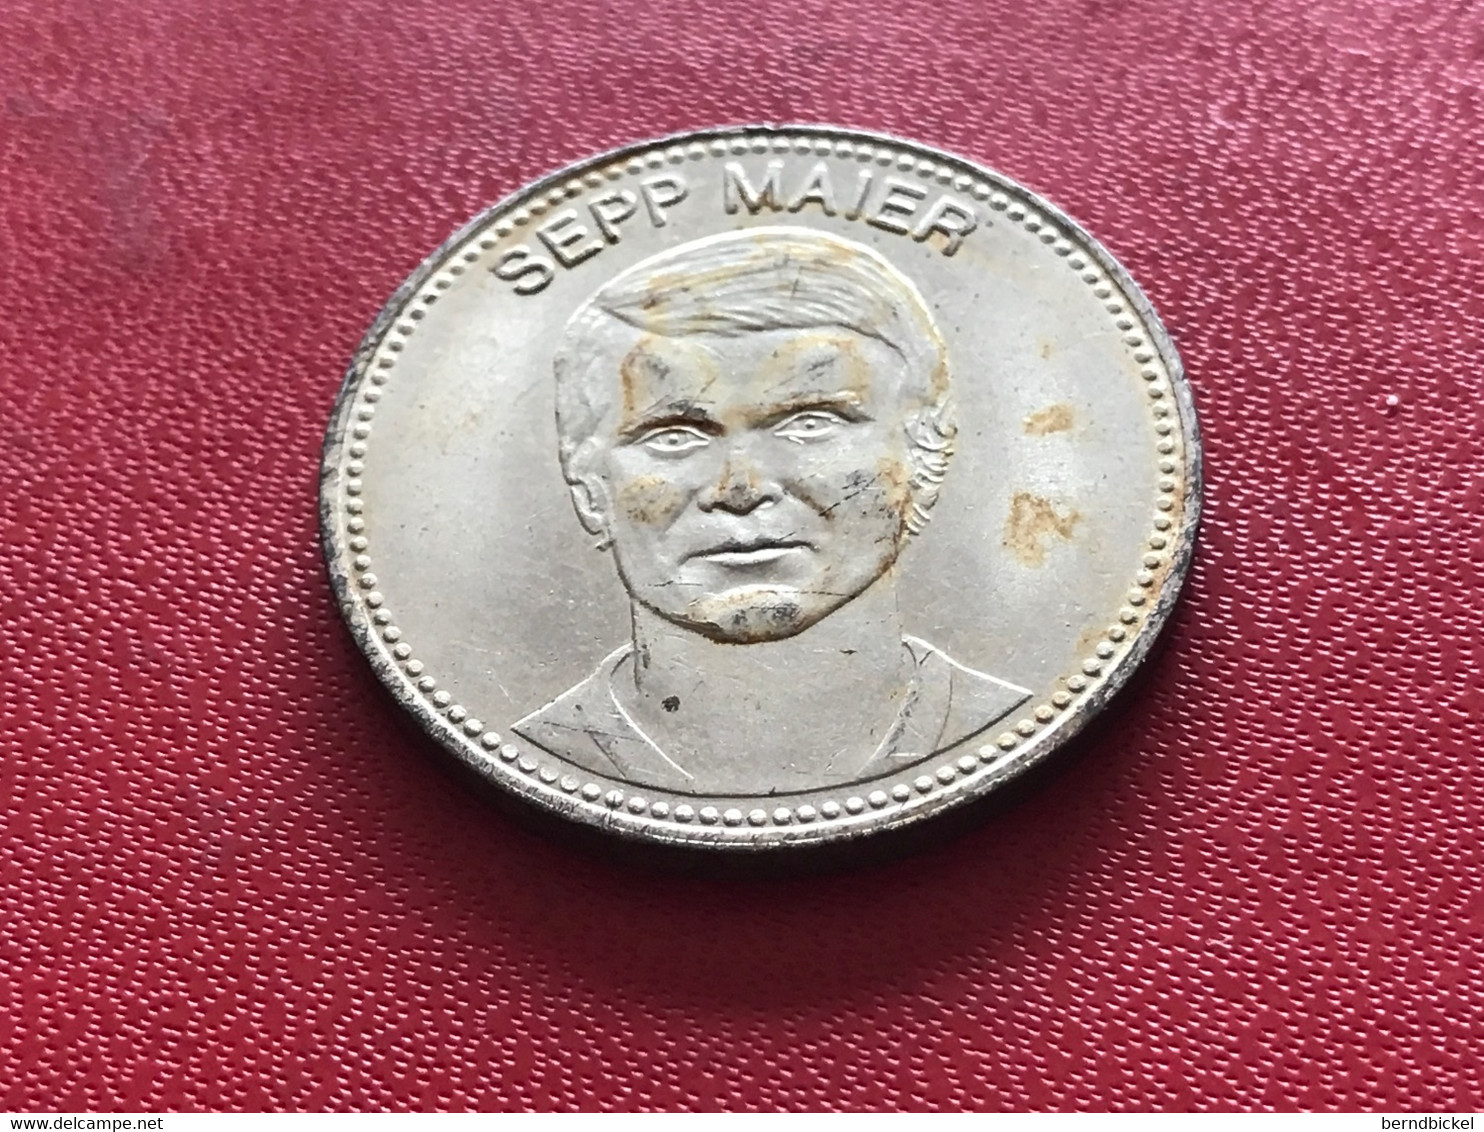 Münze Medaille Shell Mexiko 70 Sepp Maier - Monedas Elongadas (elongated Coins)